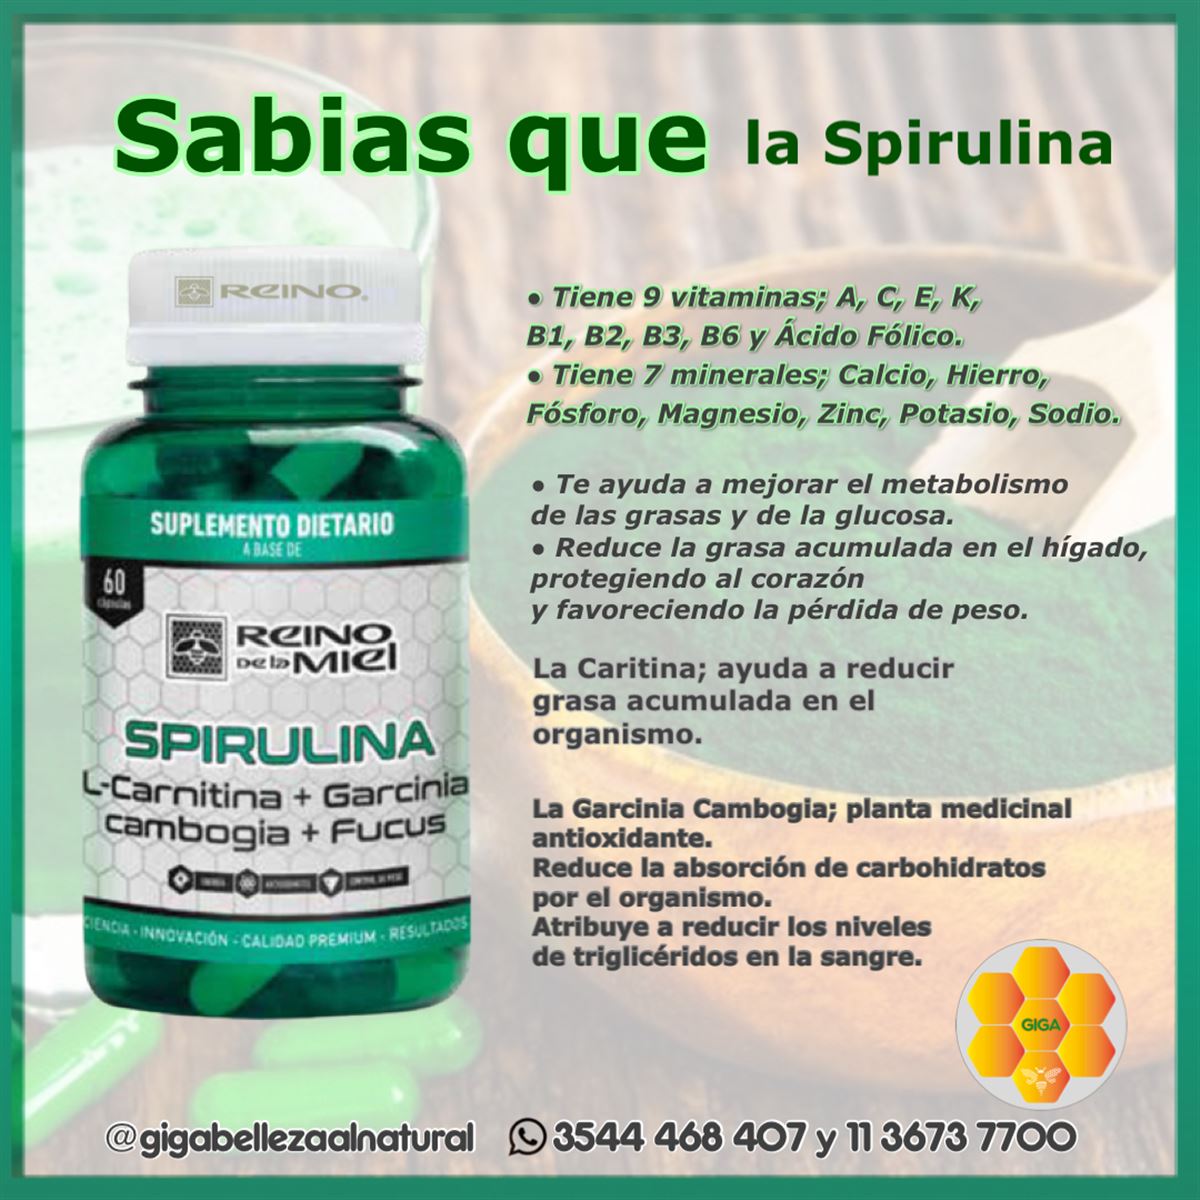 Suplemento dietario natural - Spirulina - InfoGuia Traslasierra - Spirulina